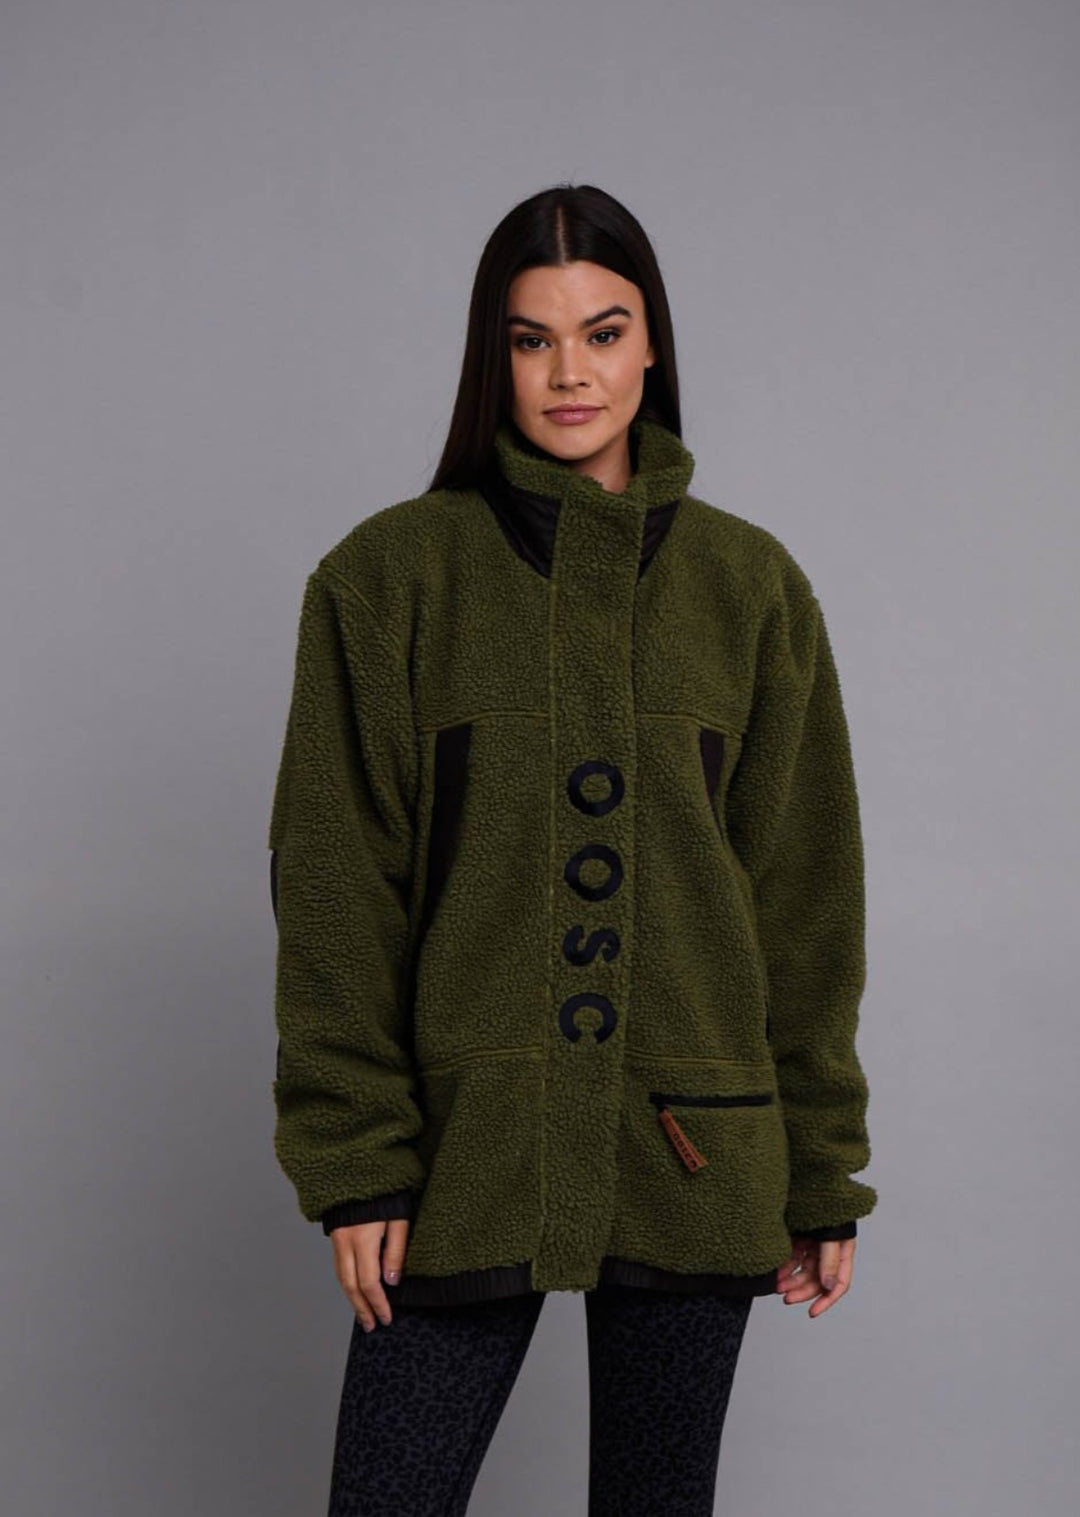 Sherpa Fleece Jacket - Khaki / Black - Women's